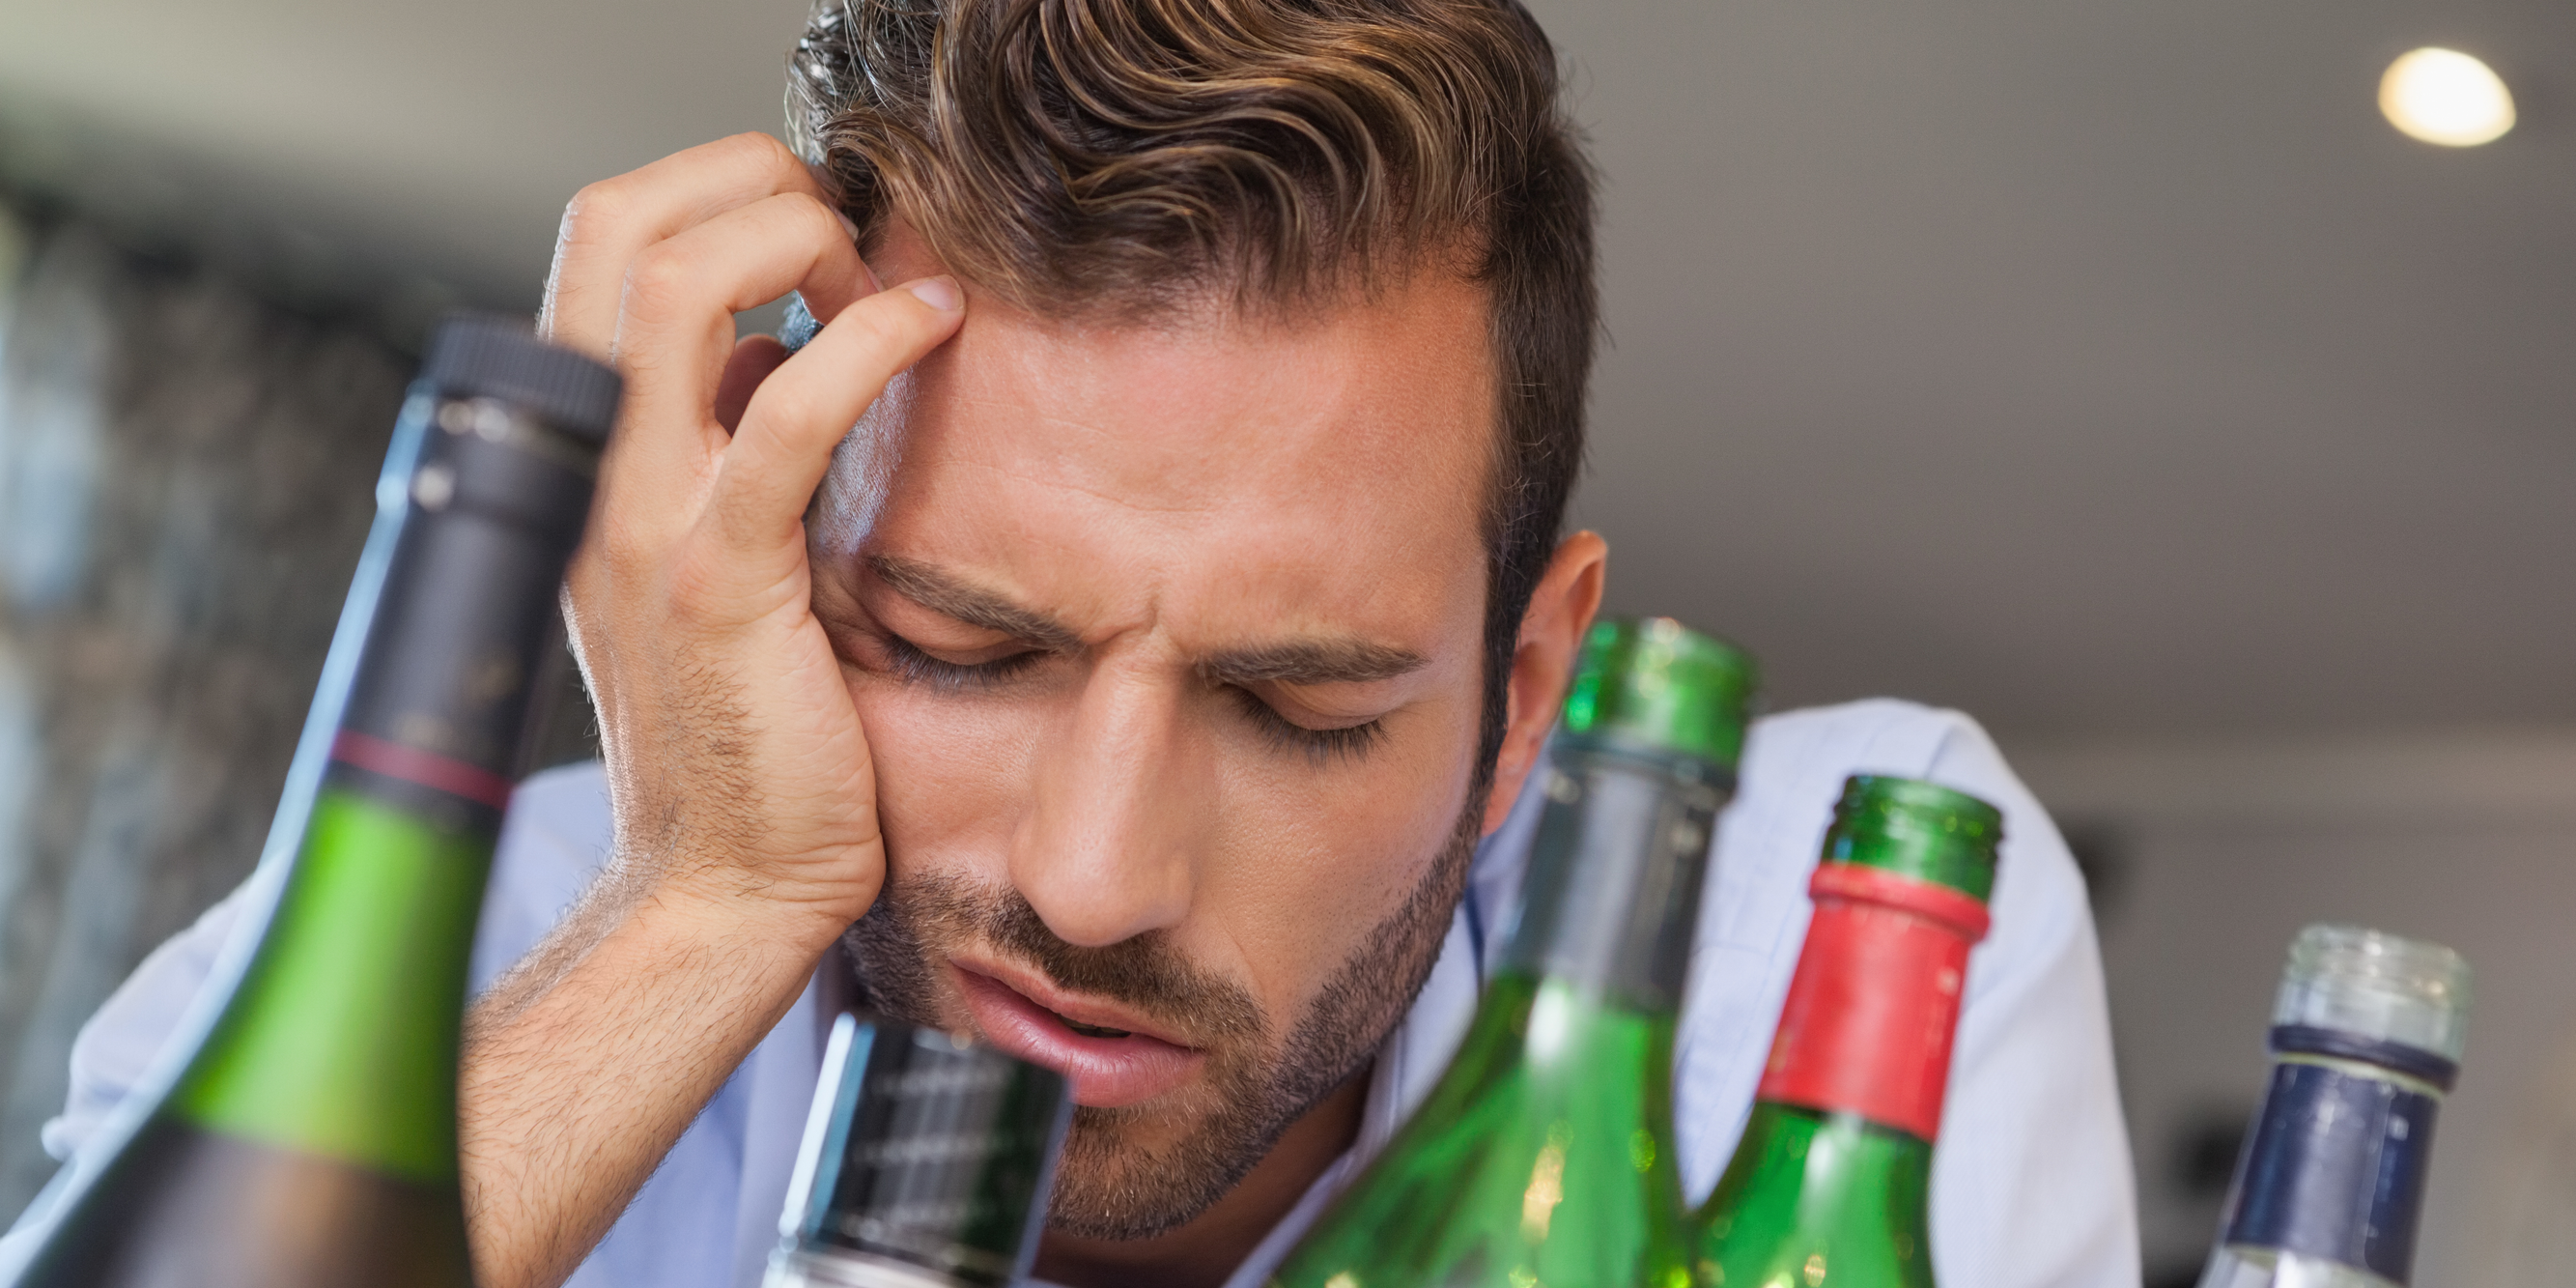 Алкоголь способствует повышению тревожности